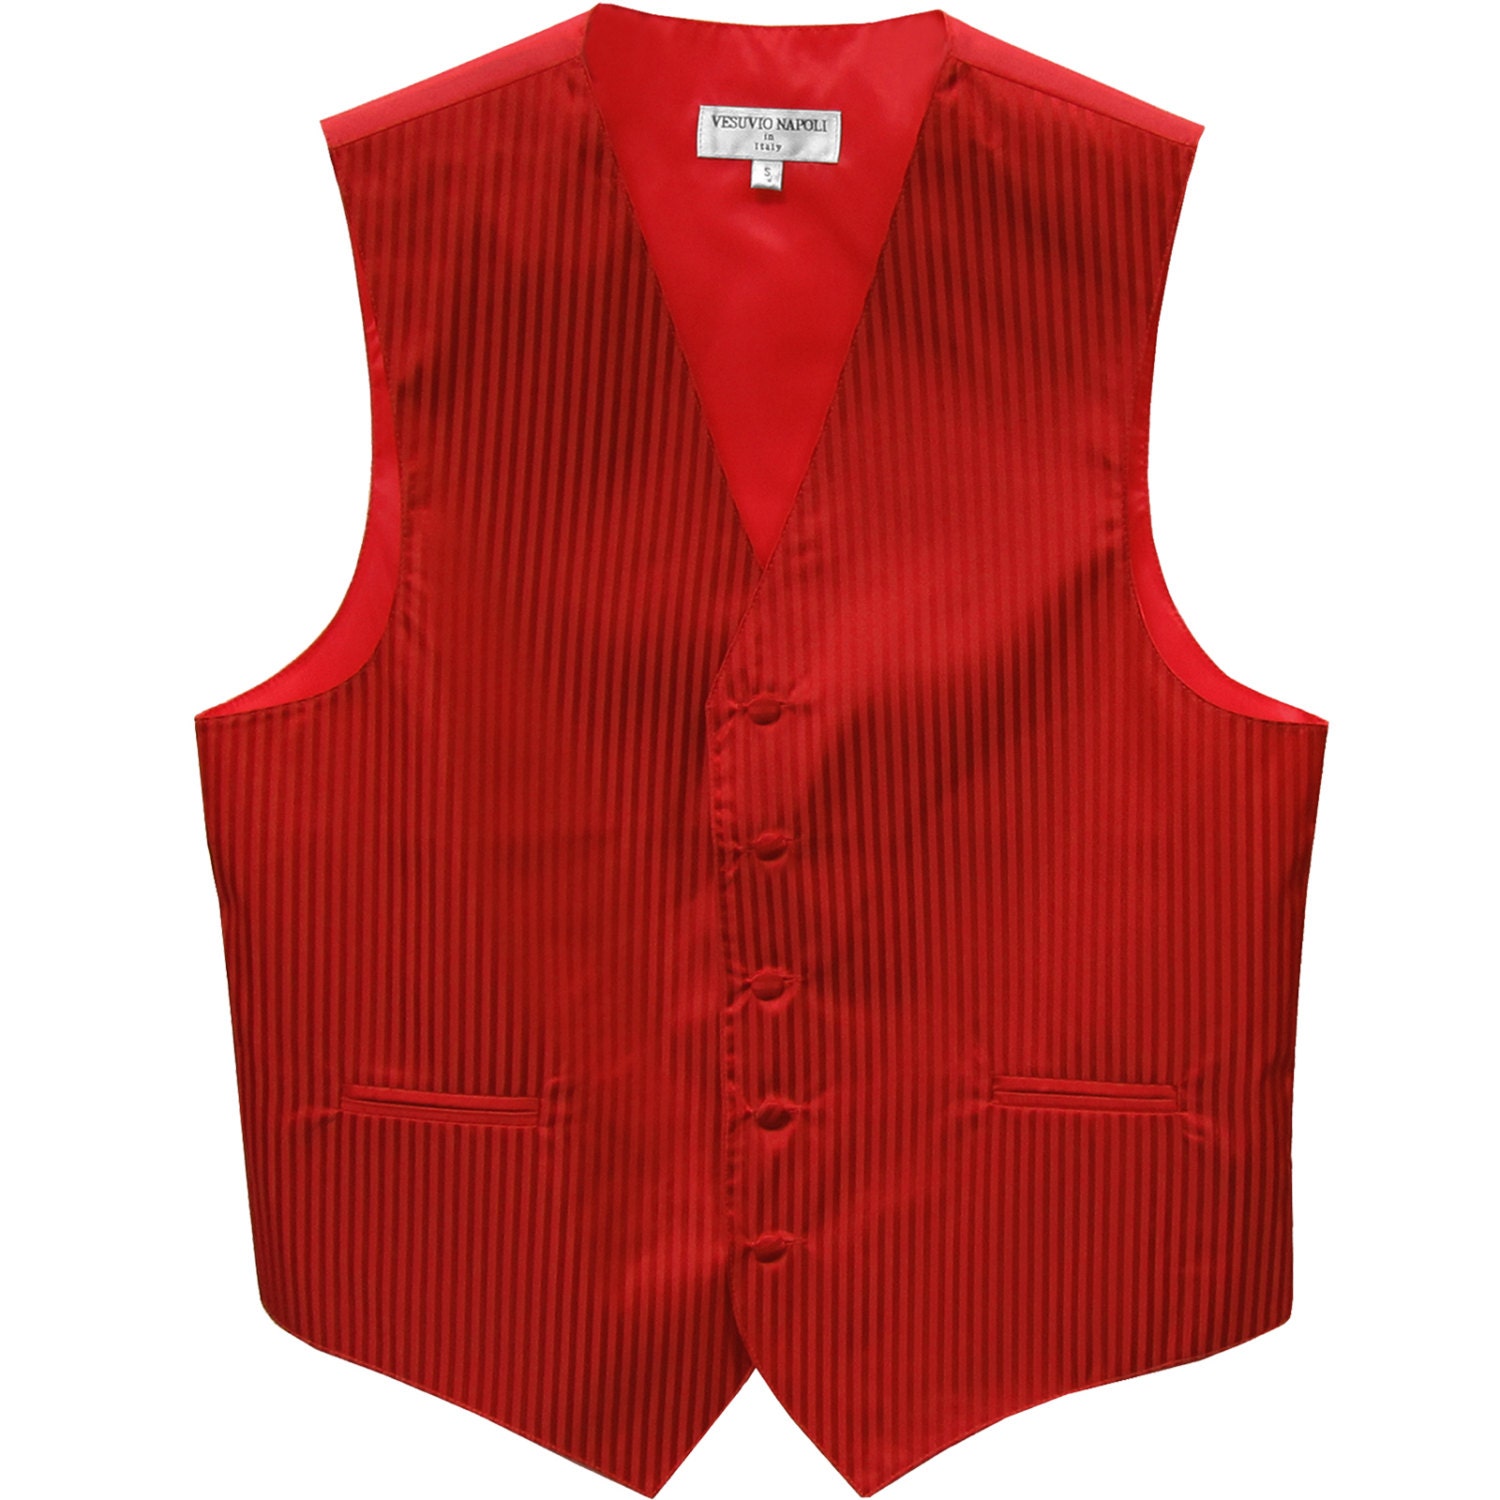 Men's Vertical Striped Red Polyester Tuxedo Vest Waistcoat